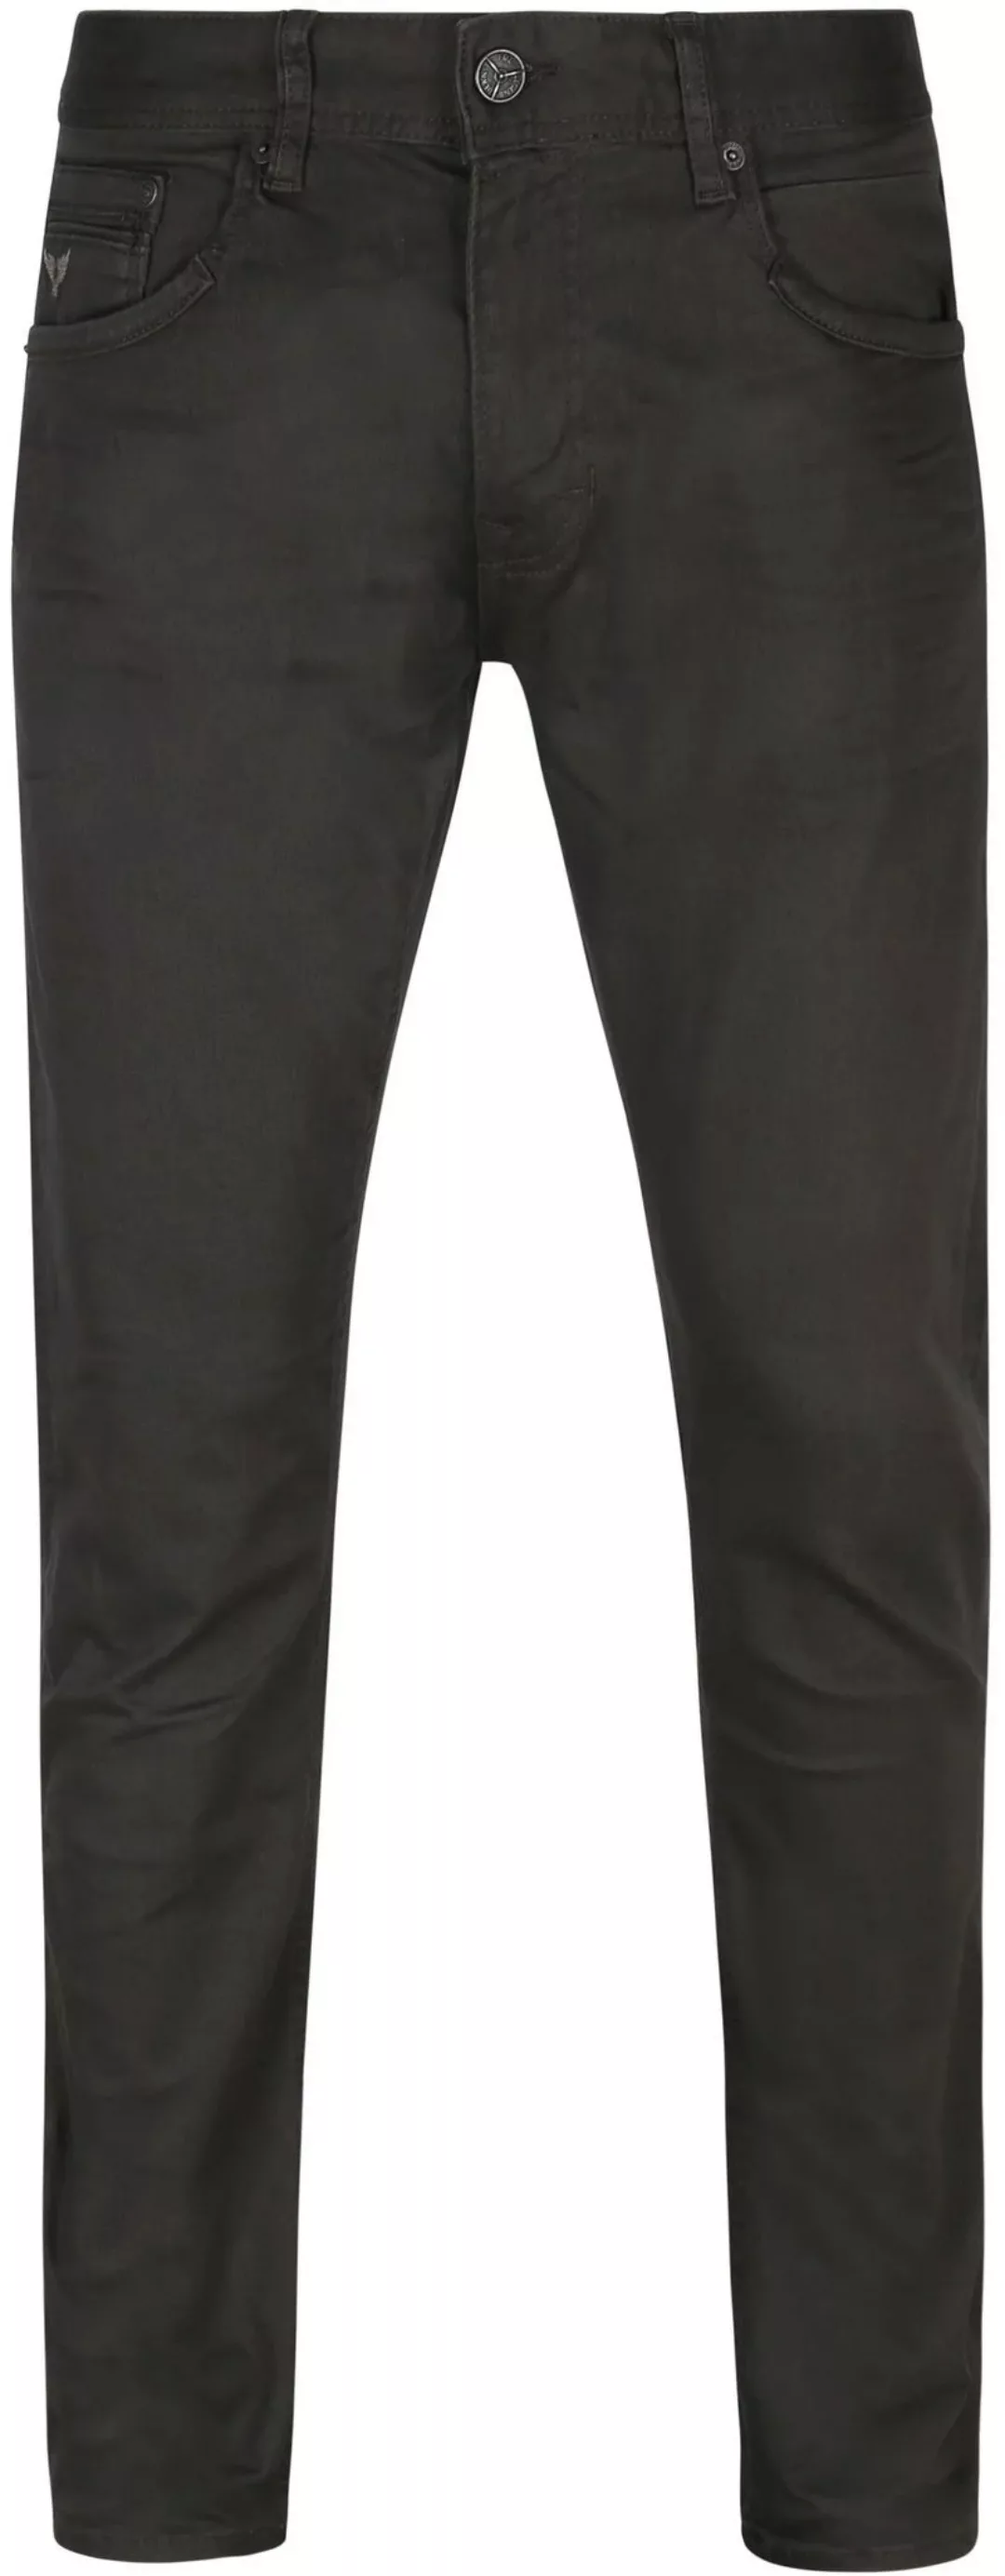 PME Legend Tailwheel Jeans Anthrazit - Größe W 31 - L 34 günstig online kaufen